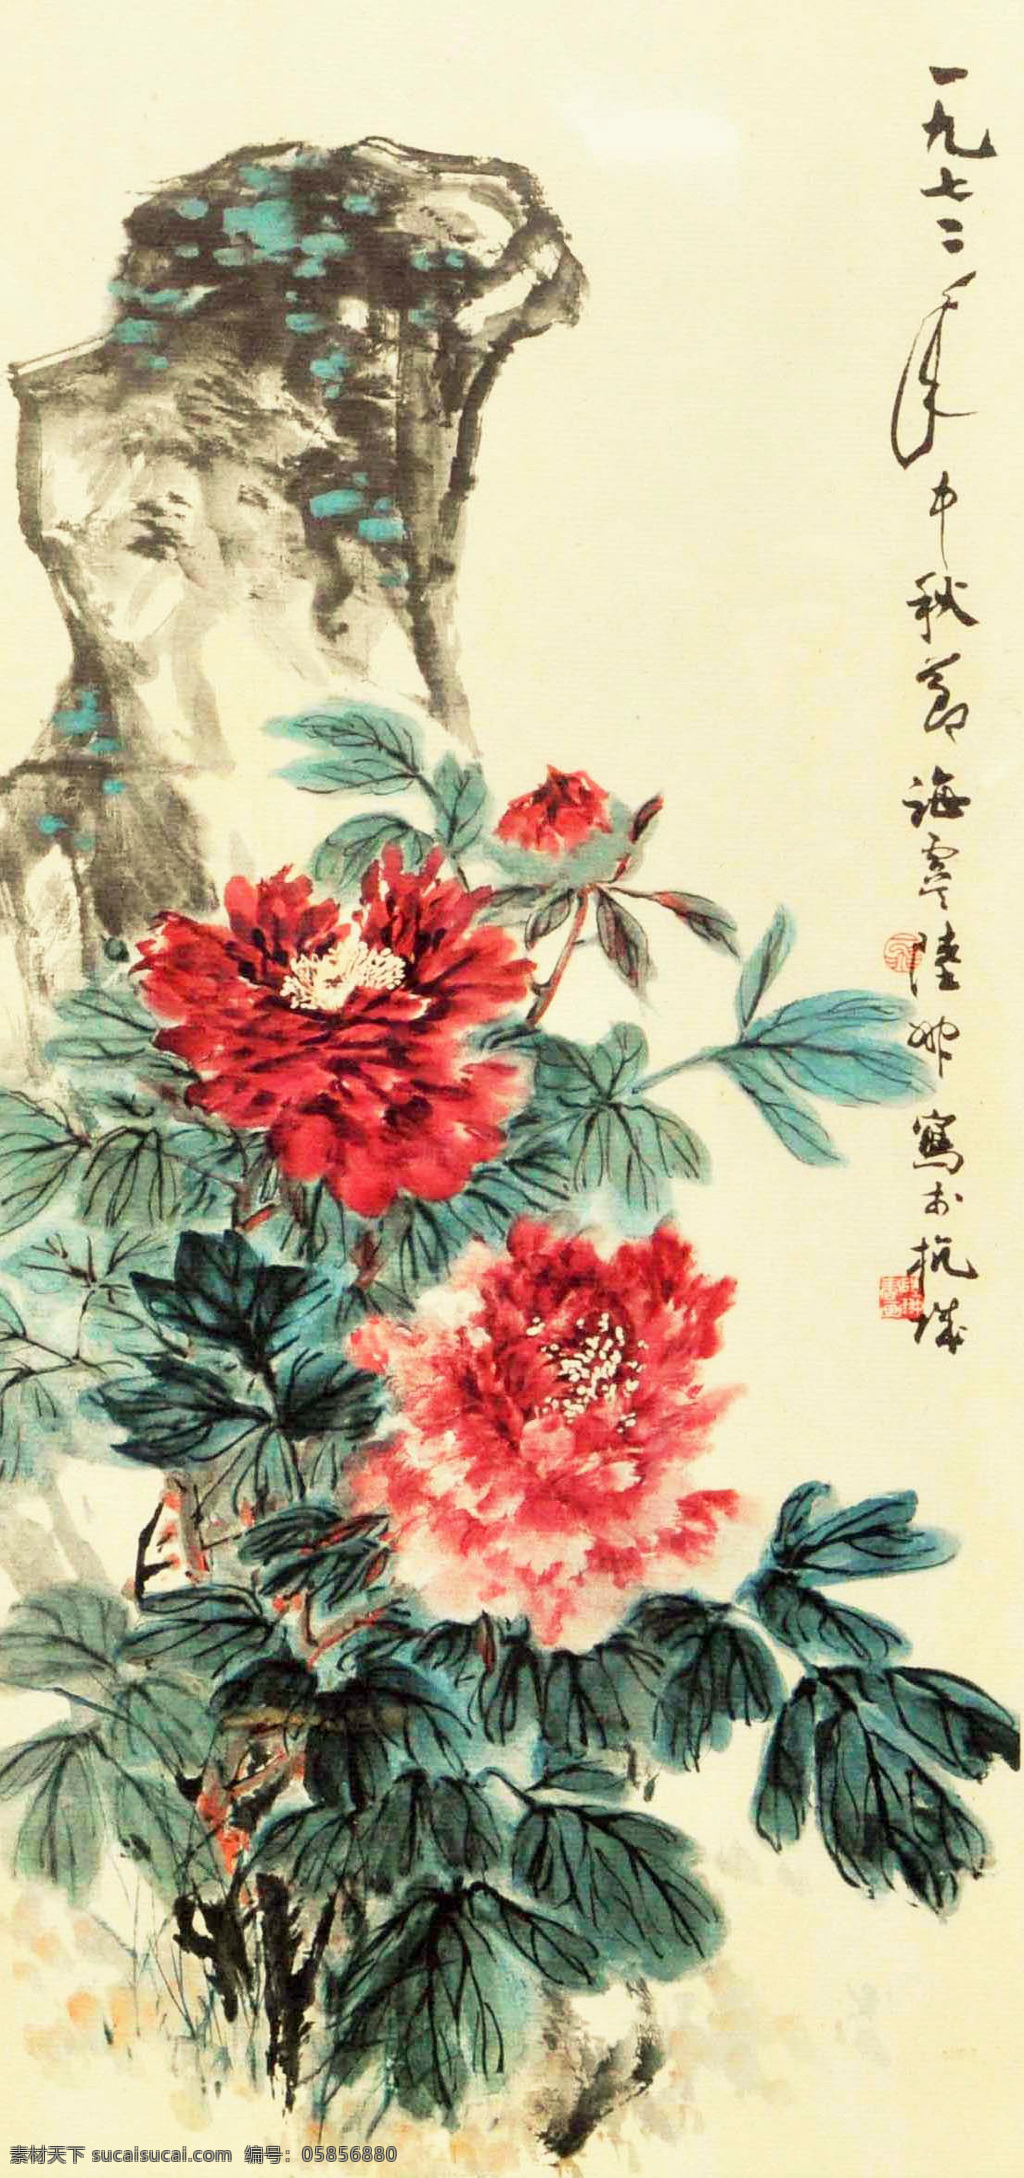 陆一飞 寿石牡丹 国画 中国画 传统画 名家 绘画 艺术 文化艺术 绘画书法